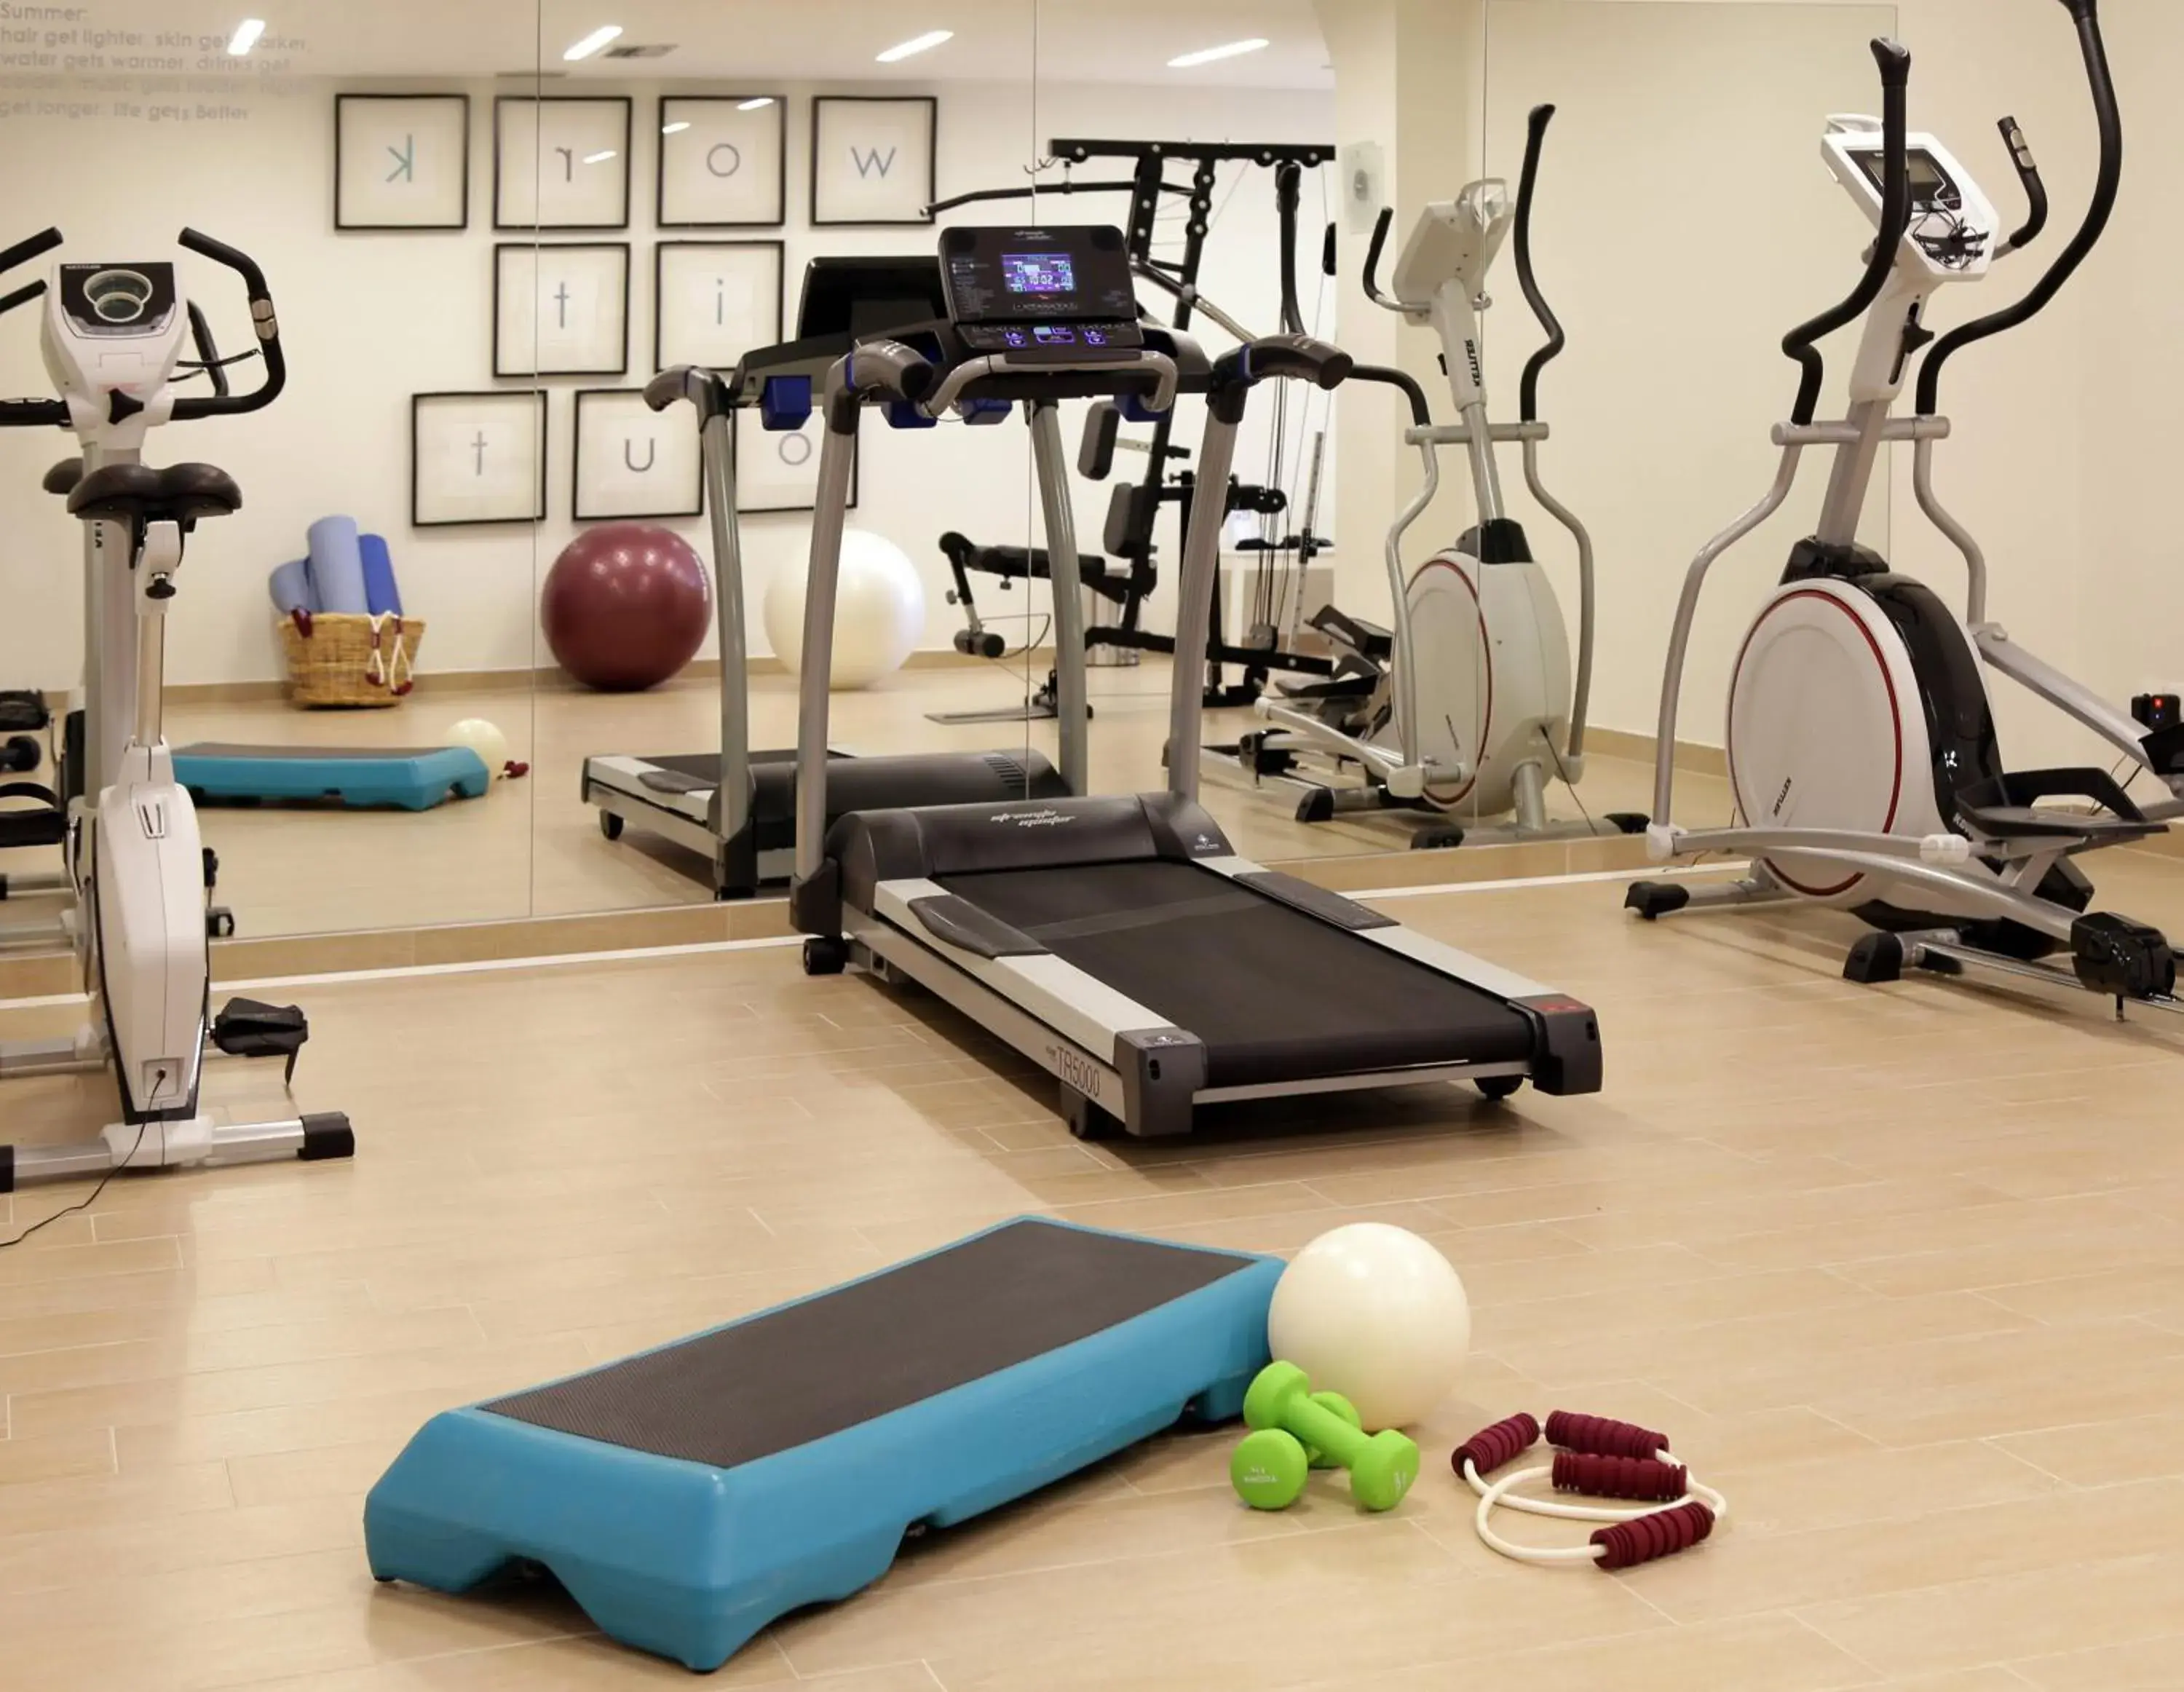 Fitness centre/facilities, Fitness Center/Facilities in Skopelos Village Hotel